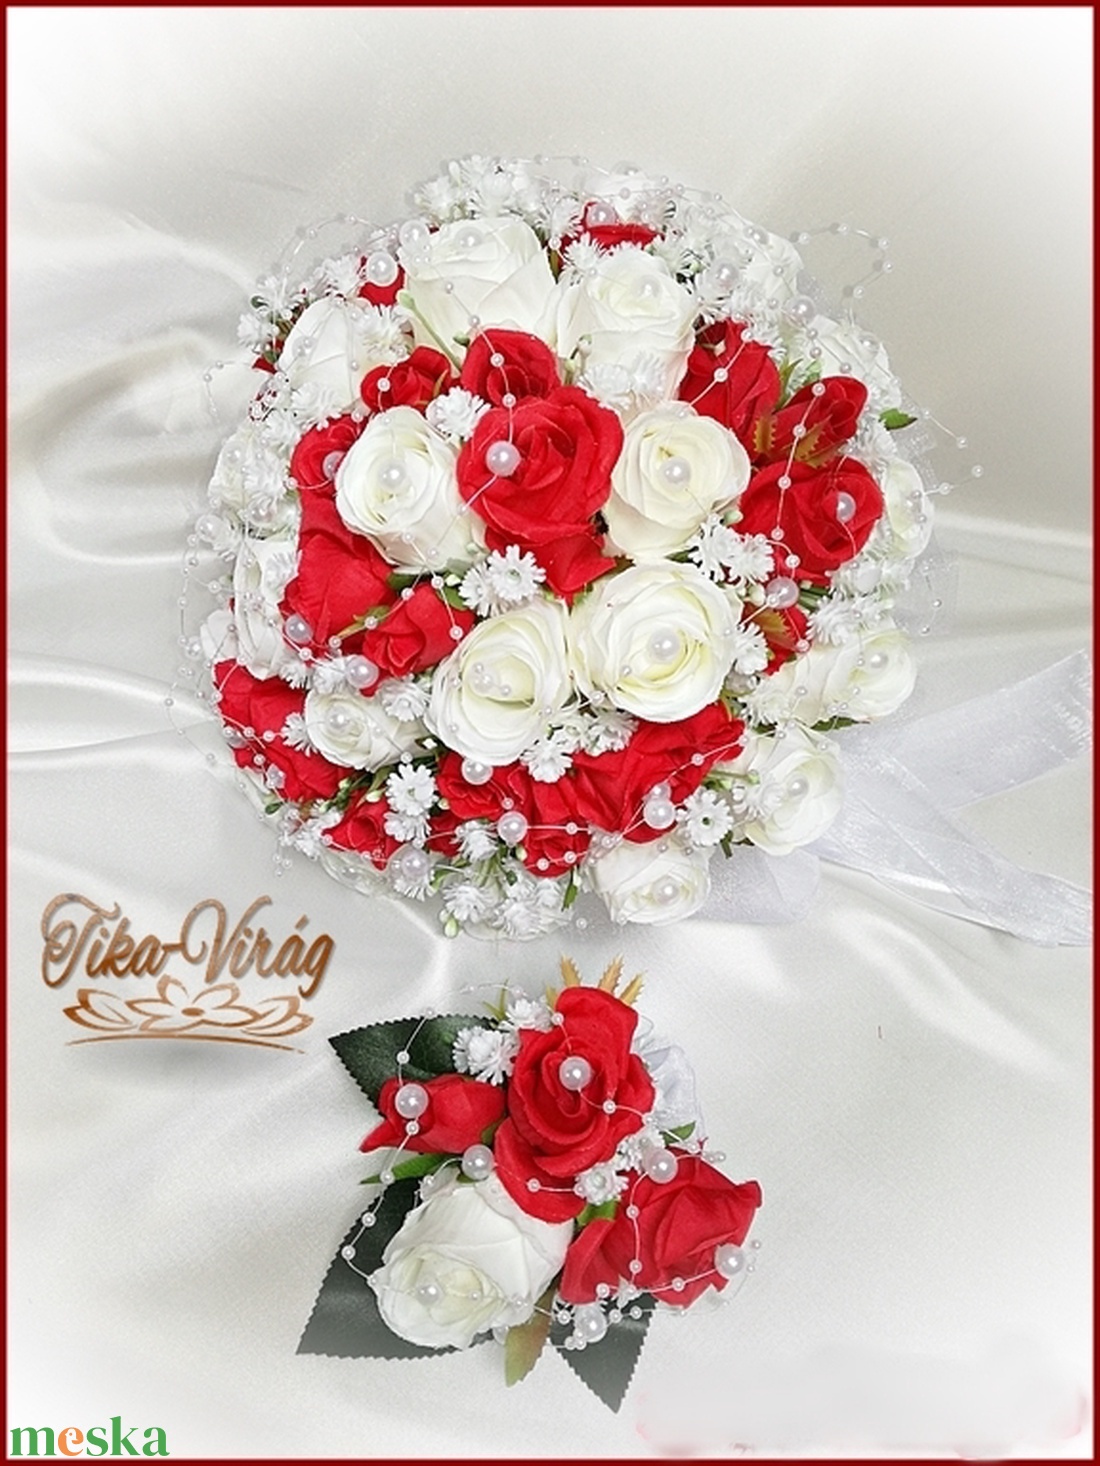 25 szálas fehér-piros rózsás örök-csokor + kitűzővel  - esküvő - menyasszonyi- és dobócsokor - Meska.hu